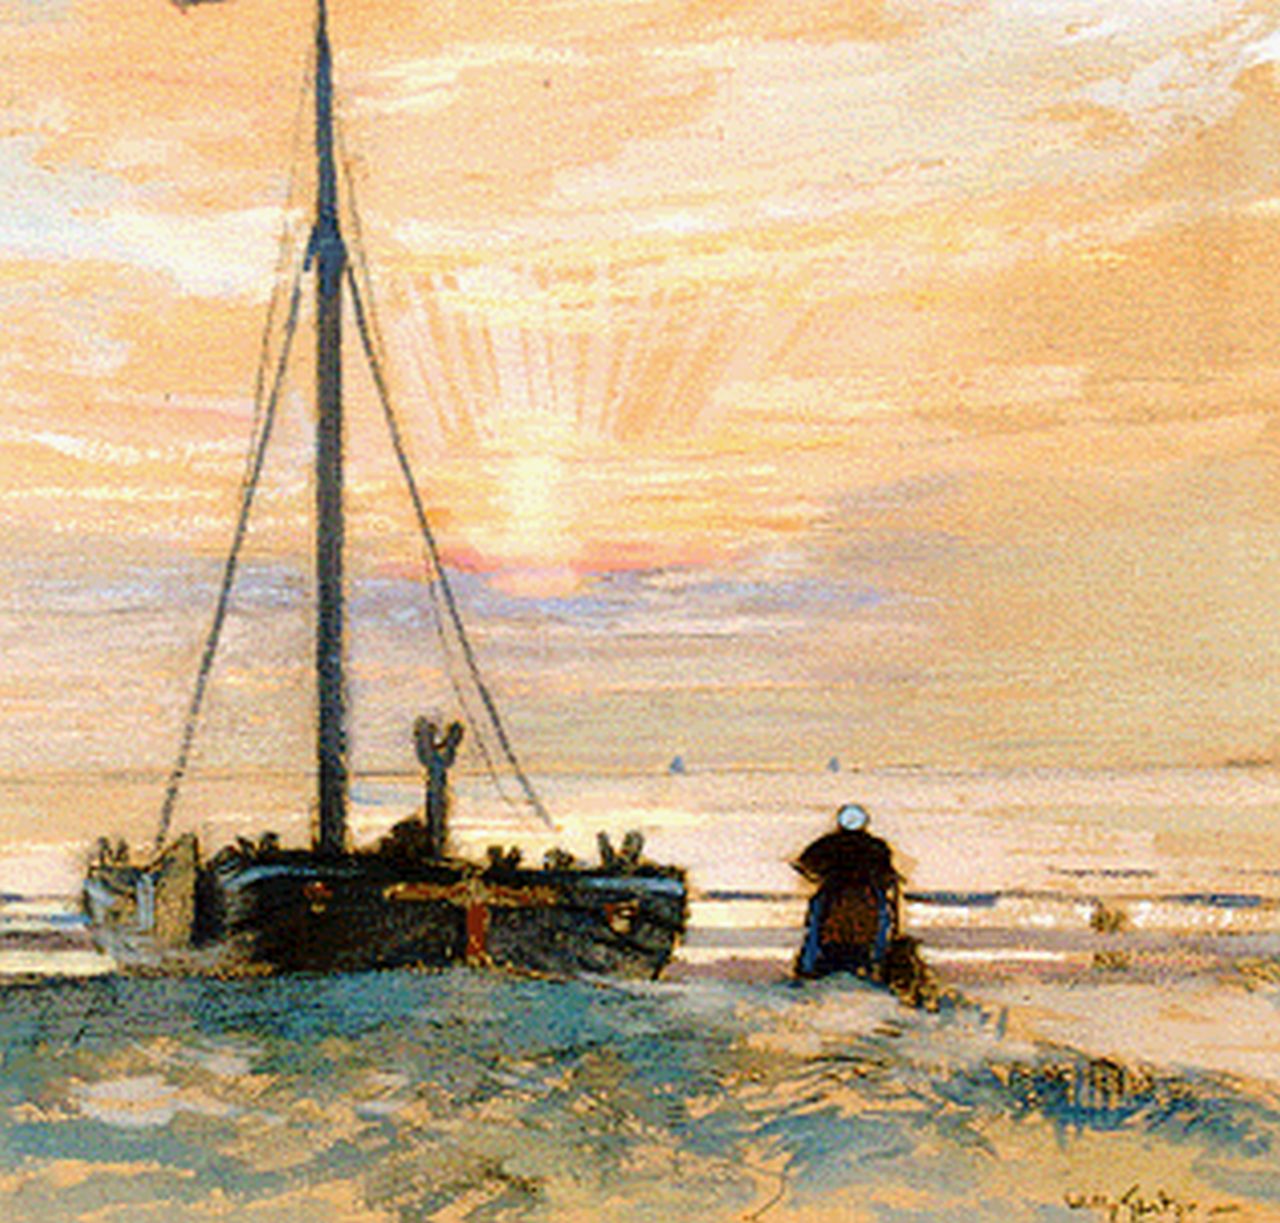 Sluiter J.W.  | Jan Willem 'Willy' Sluiter, A 'bomschuit'on the beach, Schwarze Kreide und Aquarell auf Papier 29,5 x 37,0 cm, signed l.r.